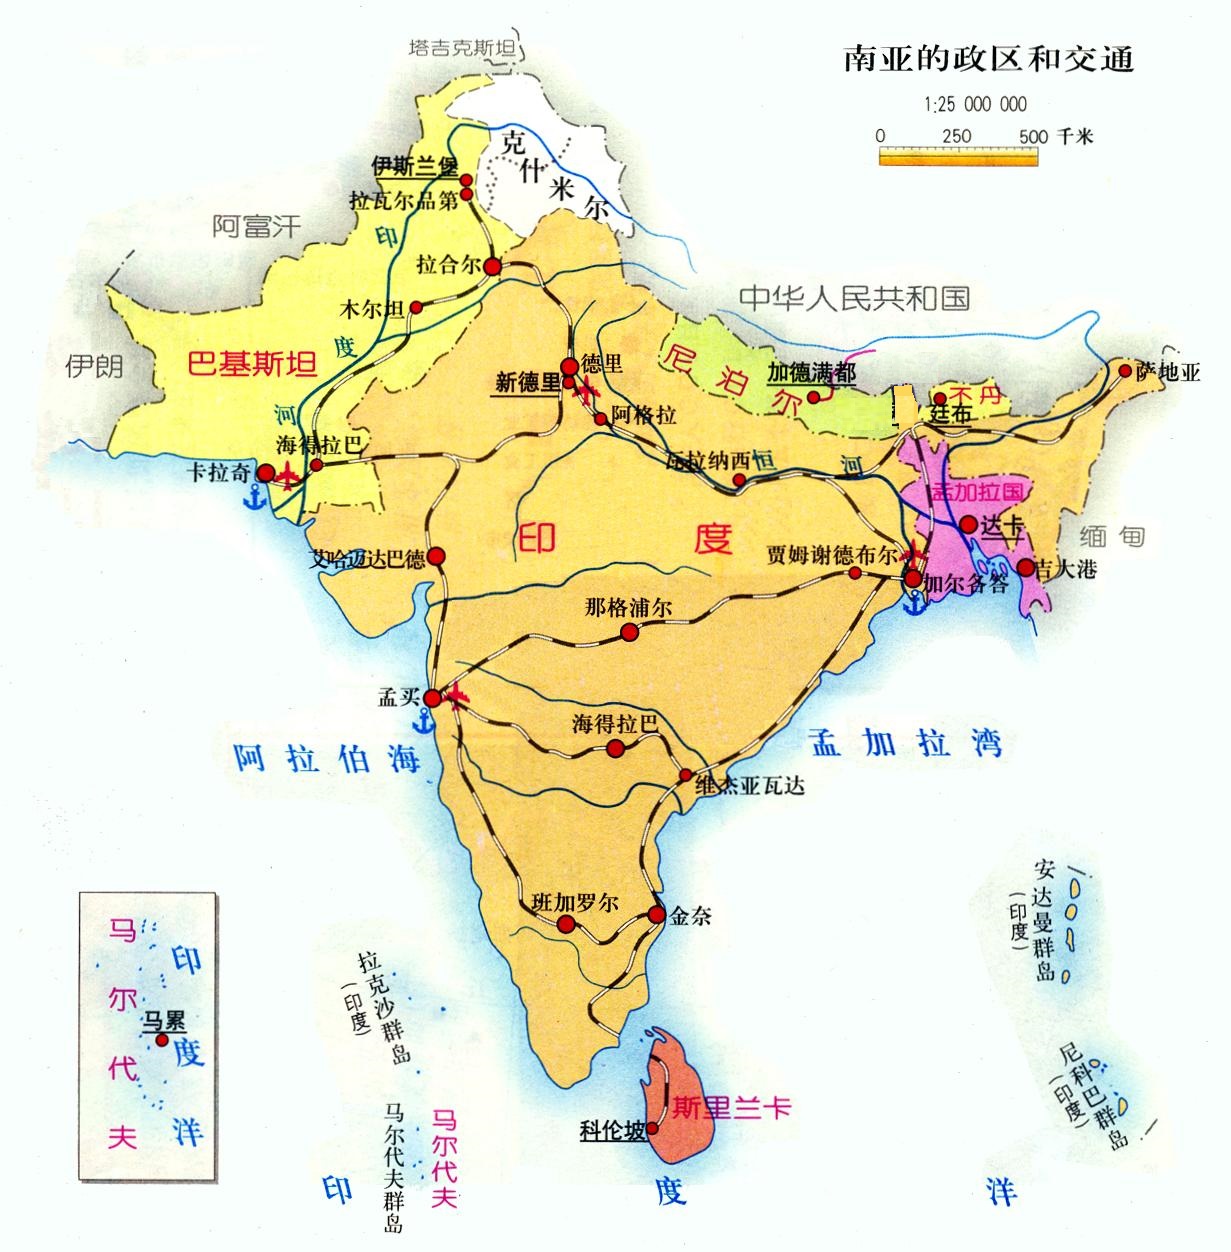 印度所在的南亚地区,南亚次大陆和印度半岛之间有什么区别和联系